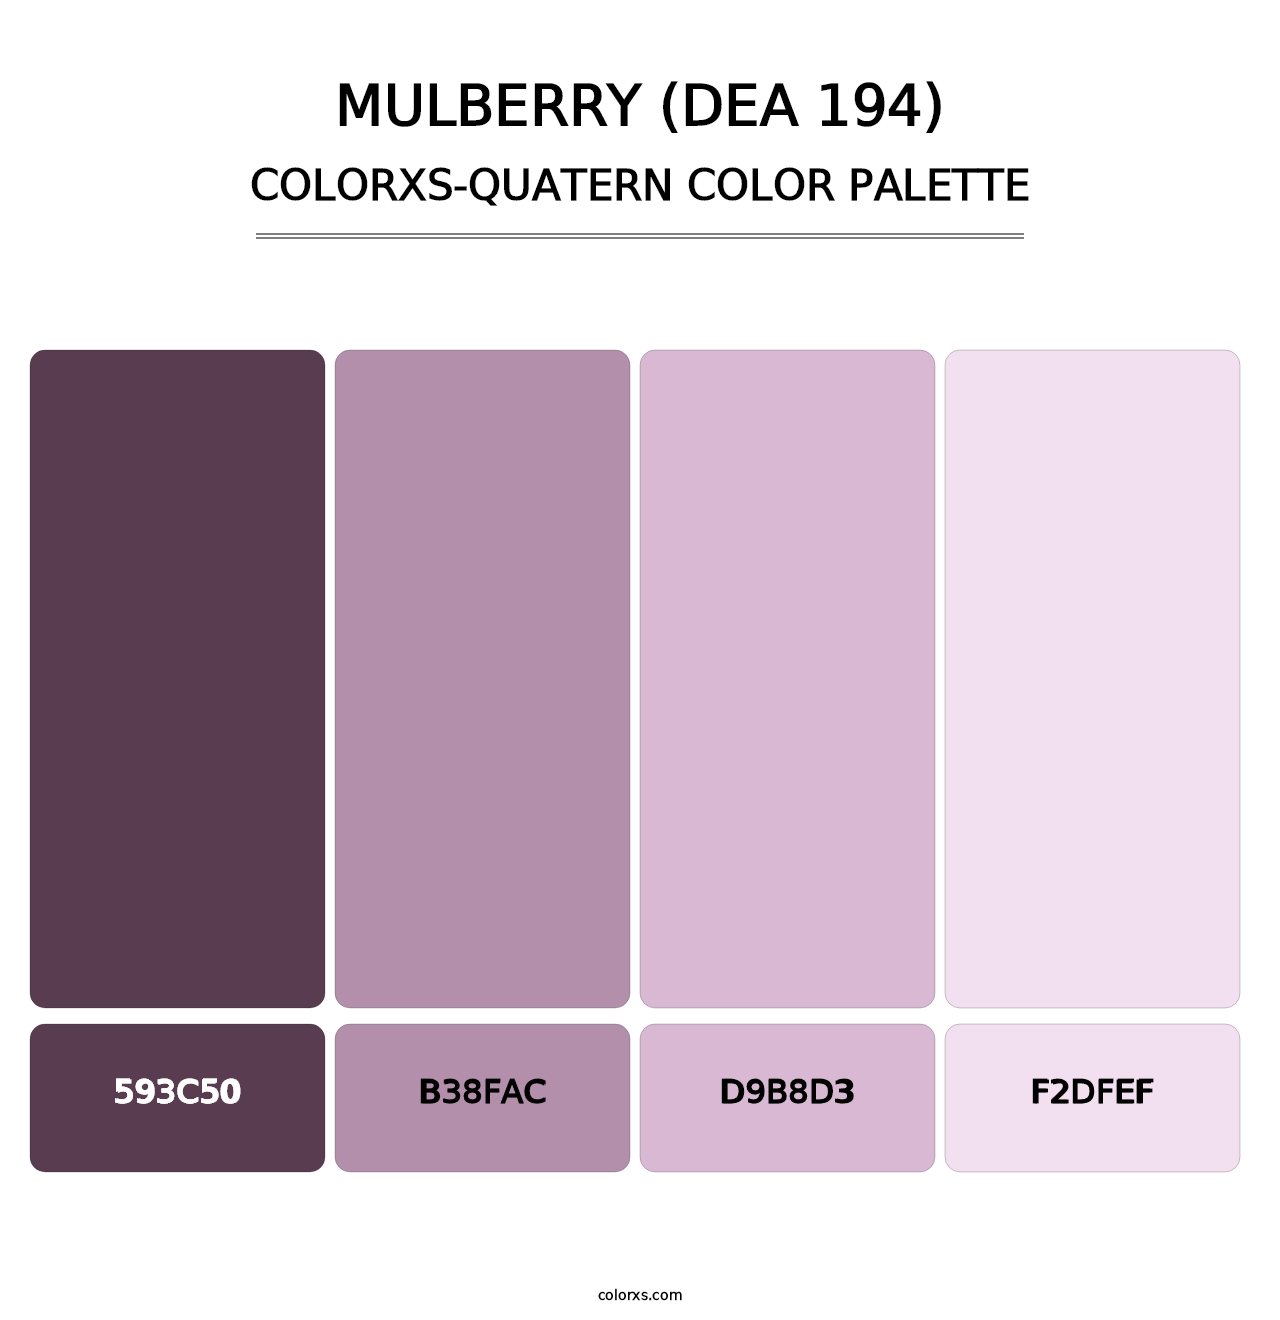 Mulberry (DEA 194) - Colorxs Quatern Palette